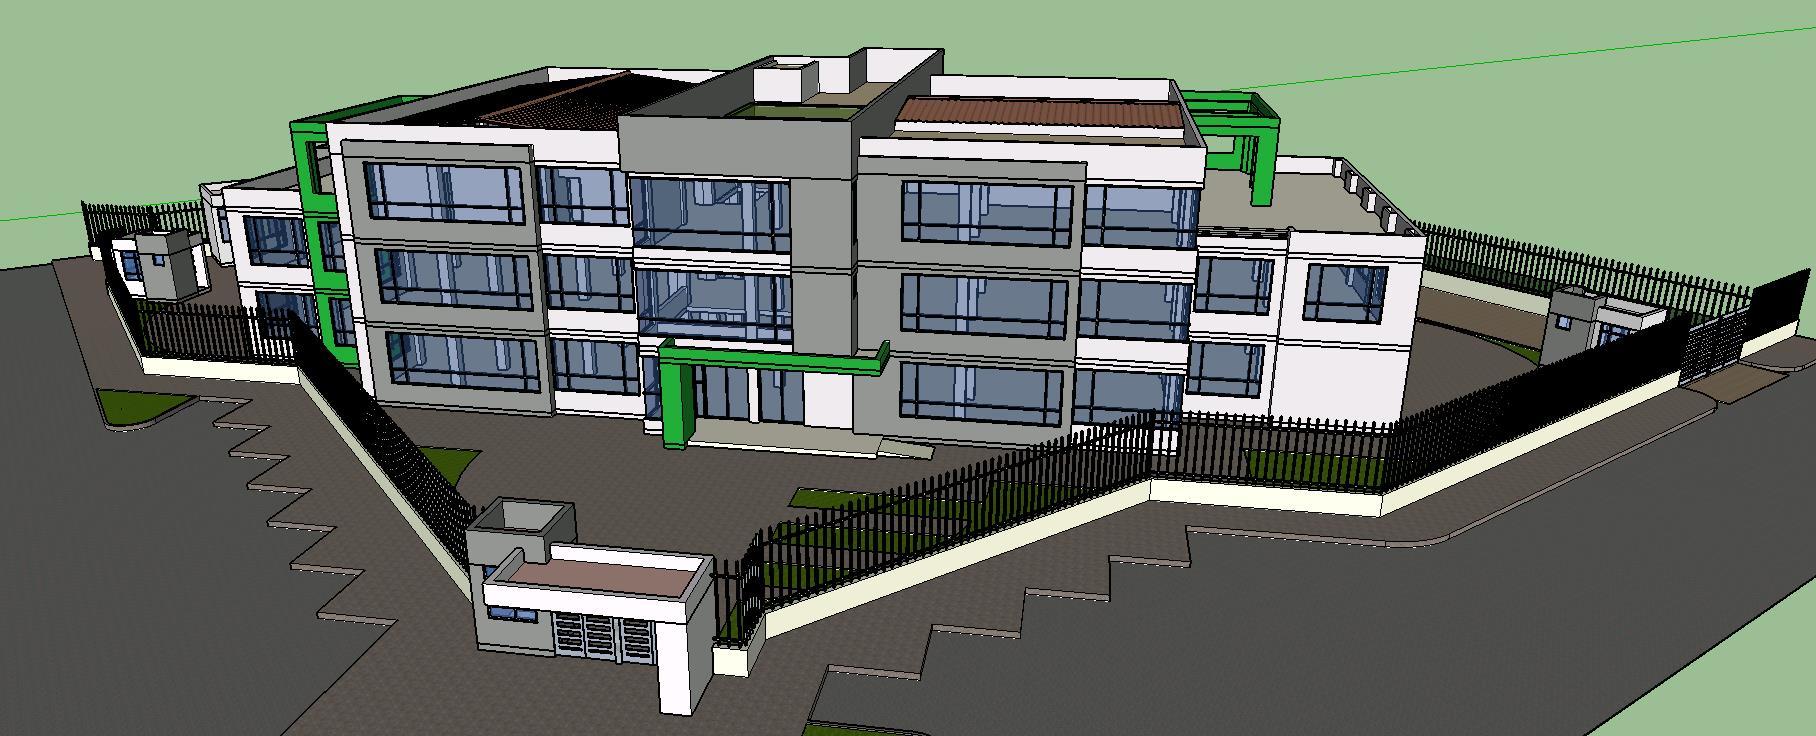 Administrative Building D Skp Model For Sketchup Designs Cad